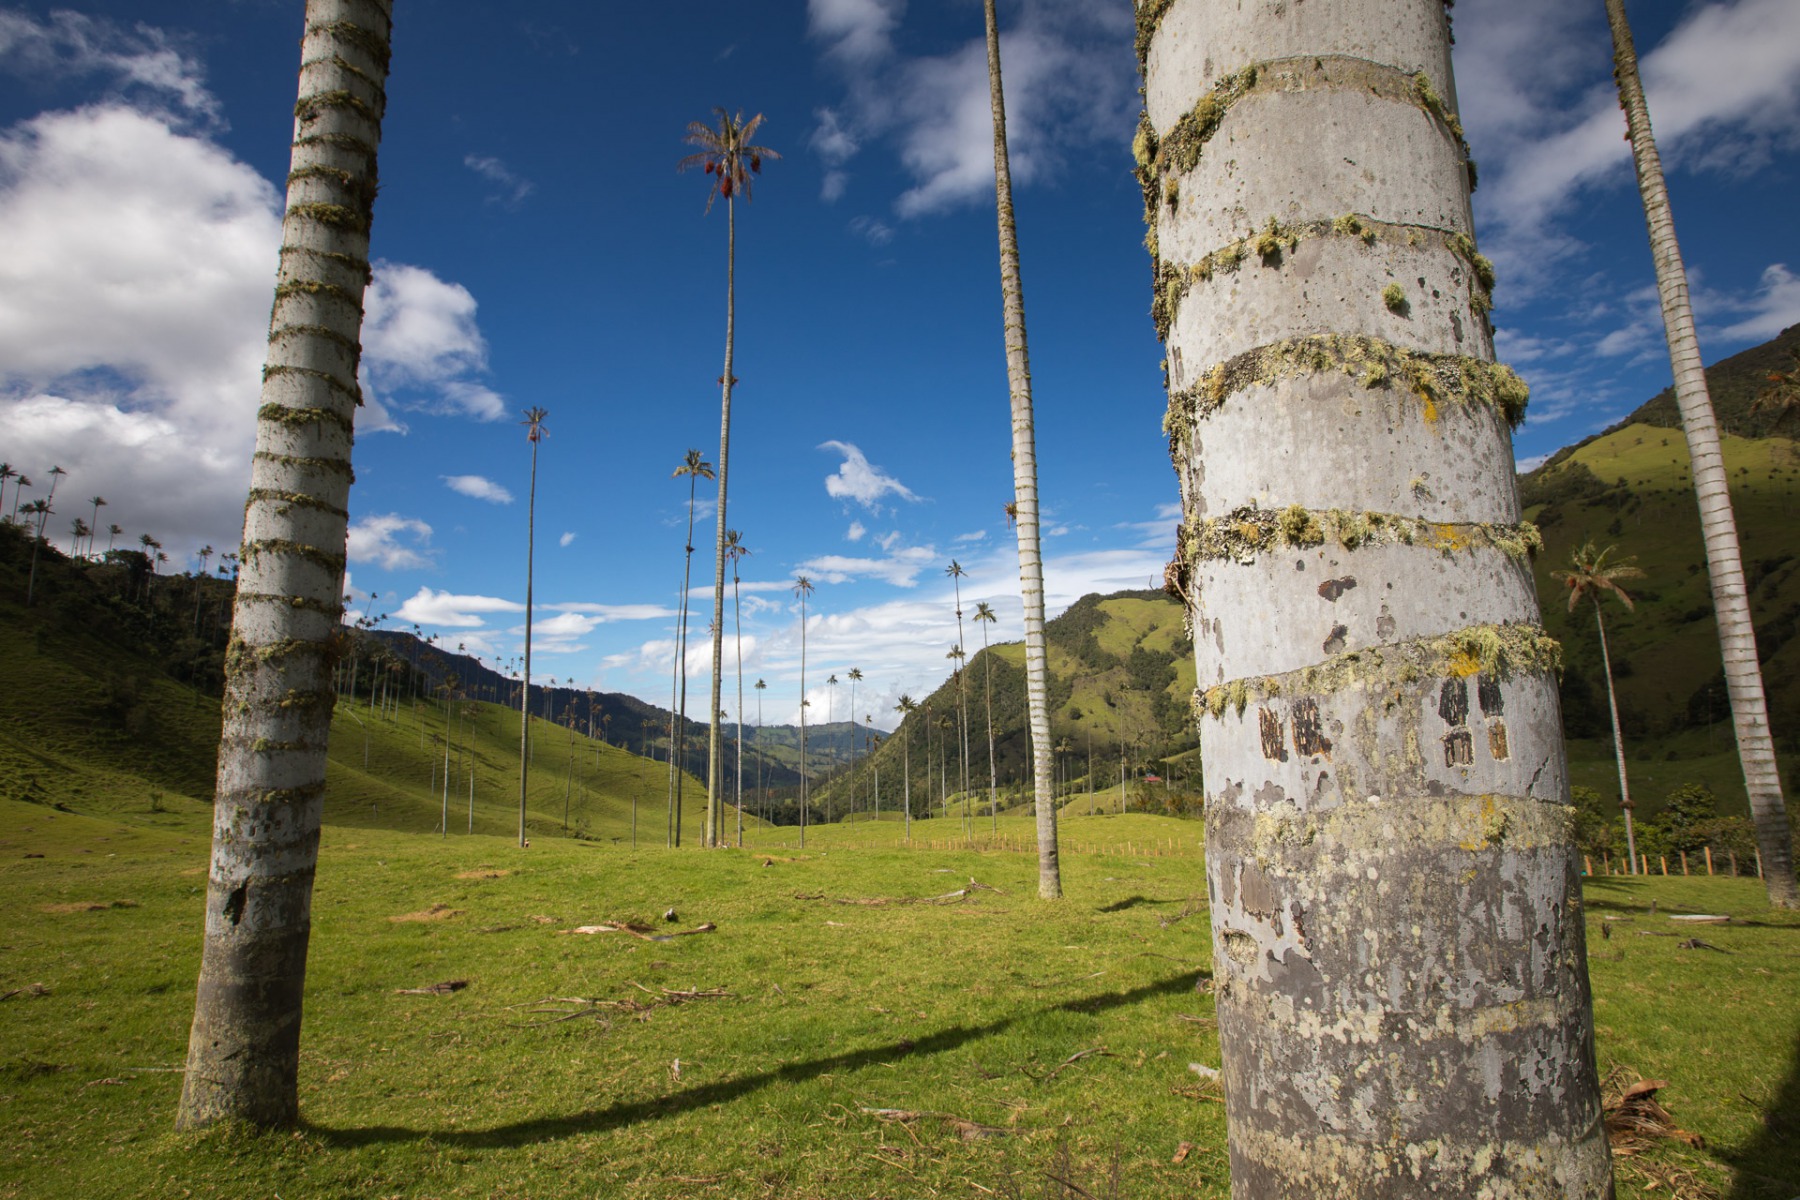 leticia amazonas colombia © Tristan Quevilly